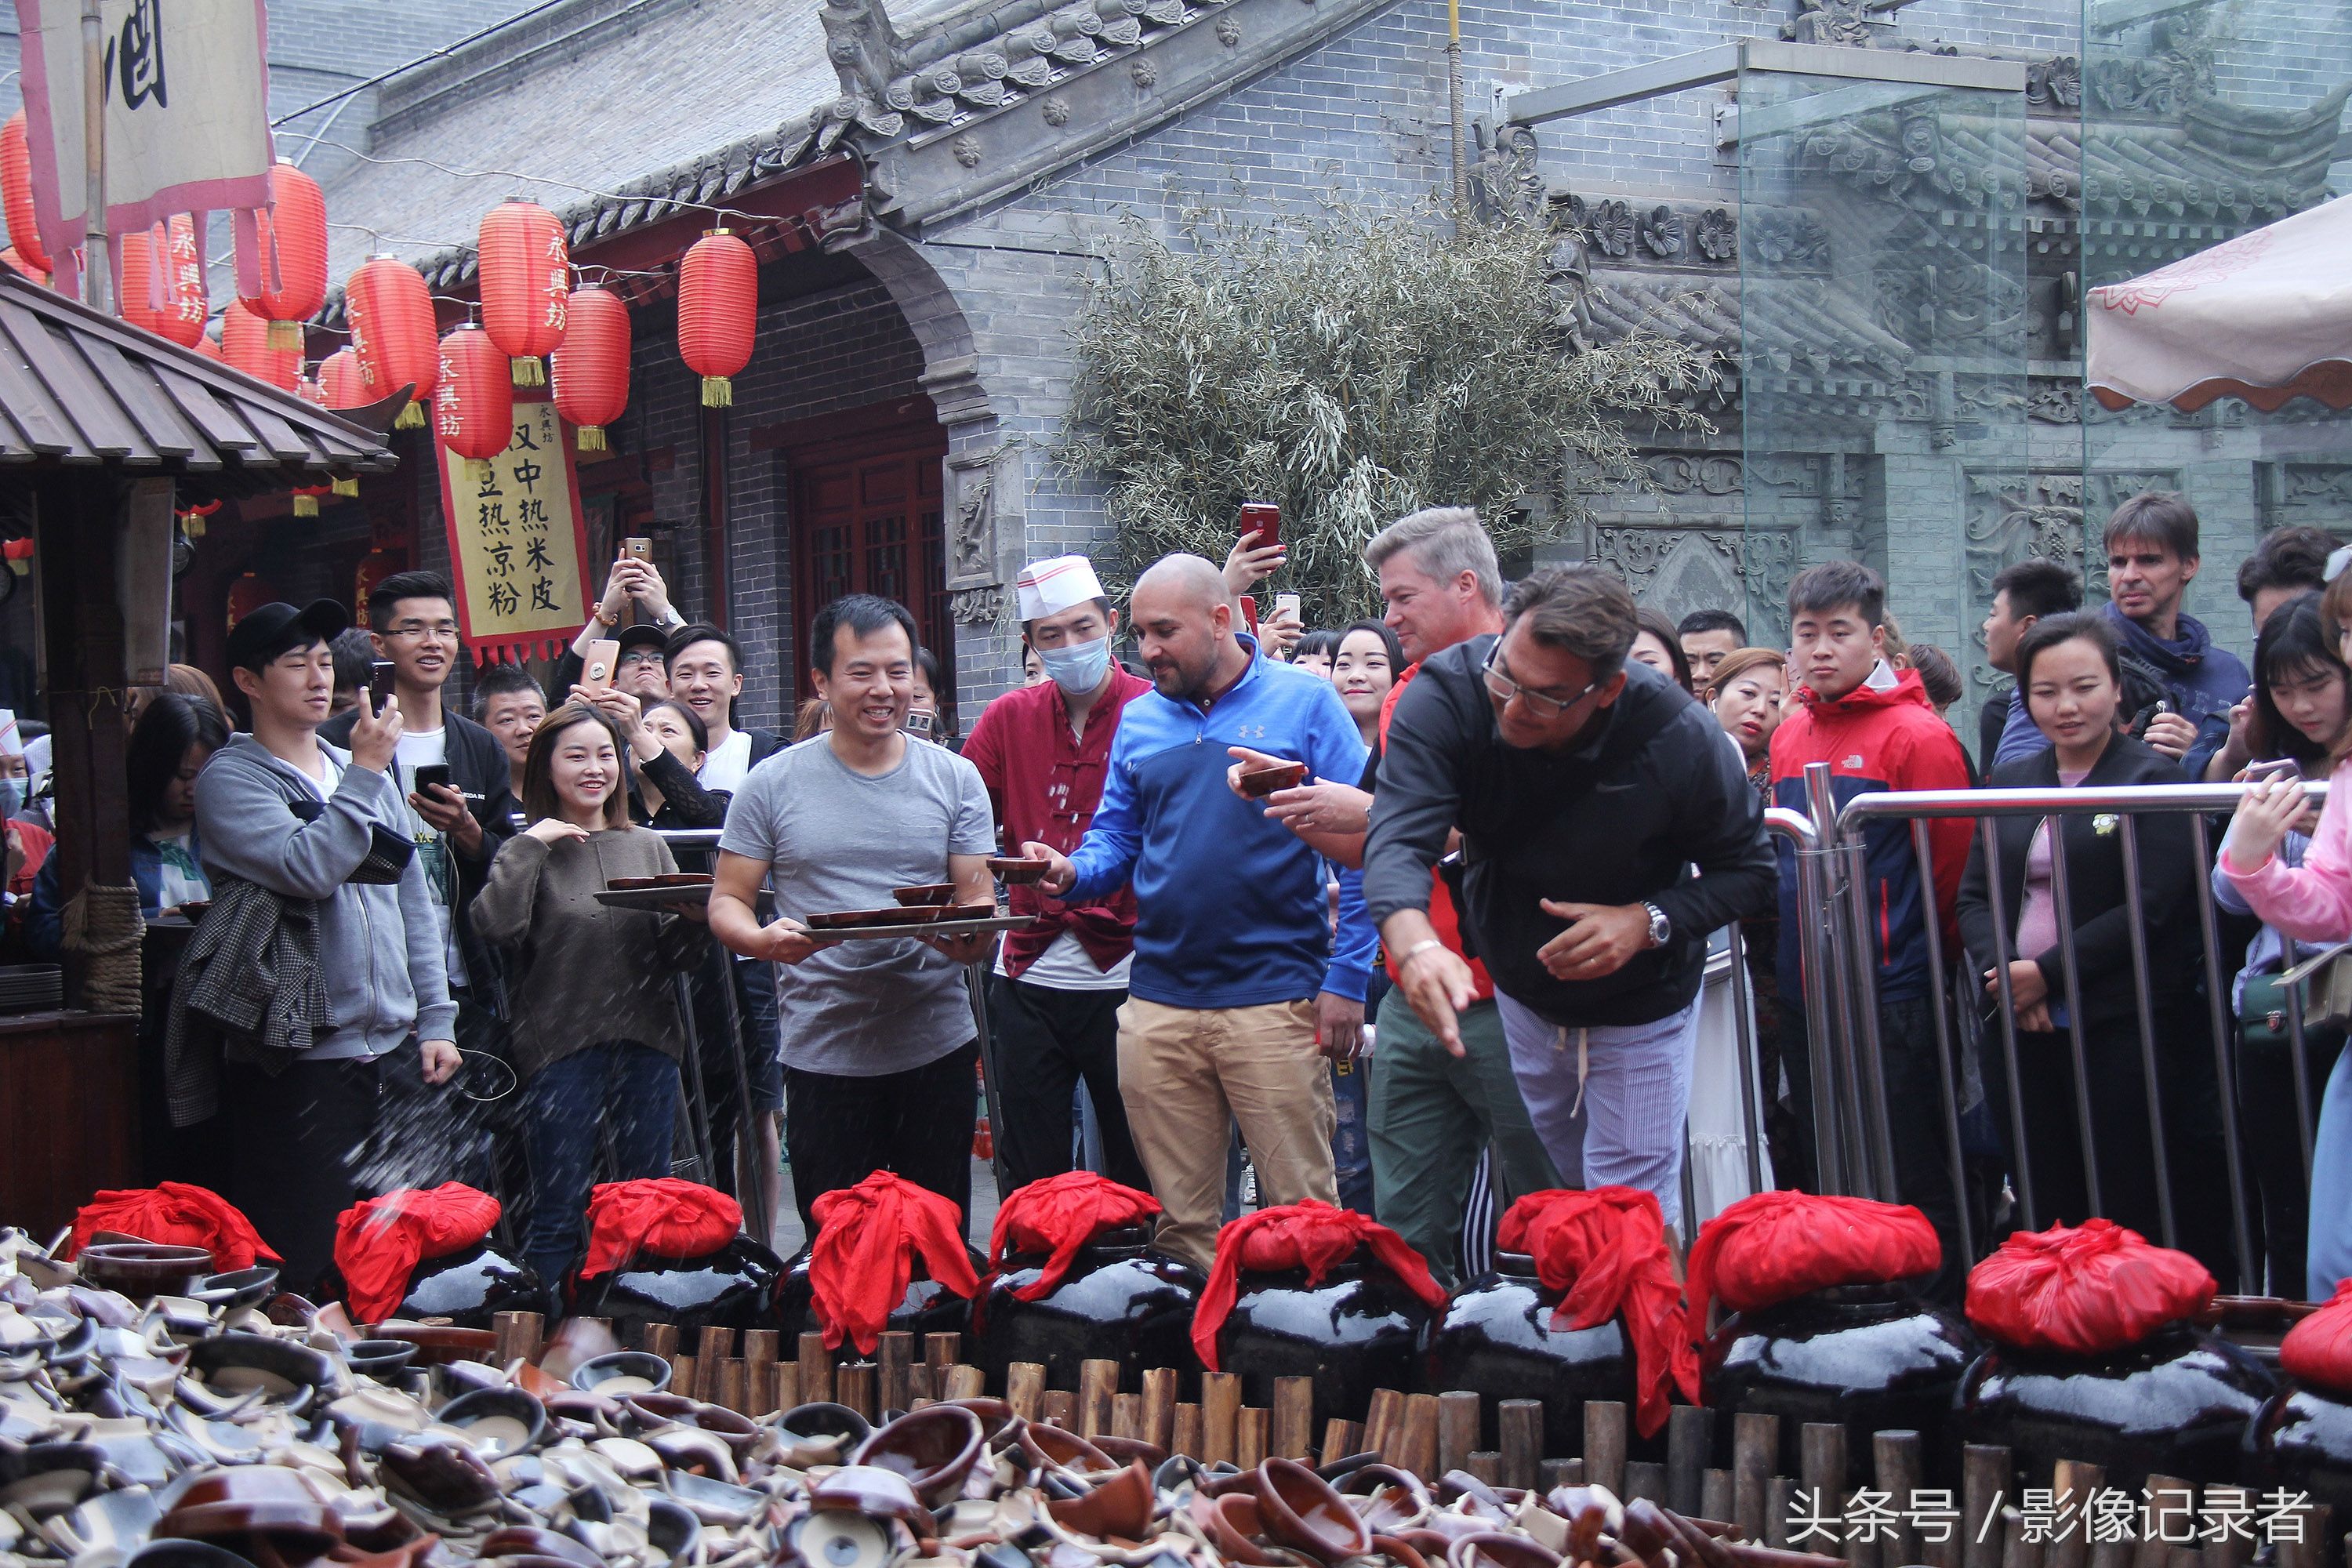 探访西安网红景点:游客每天排长龙喝摔碗酒 